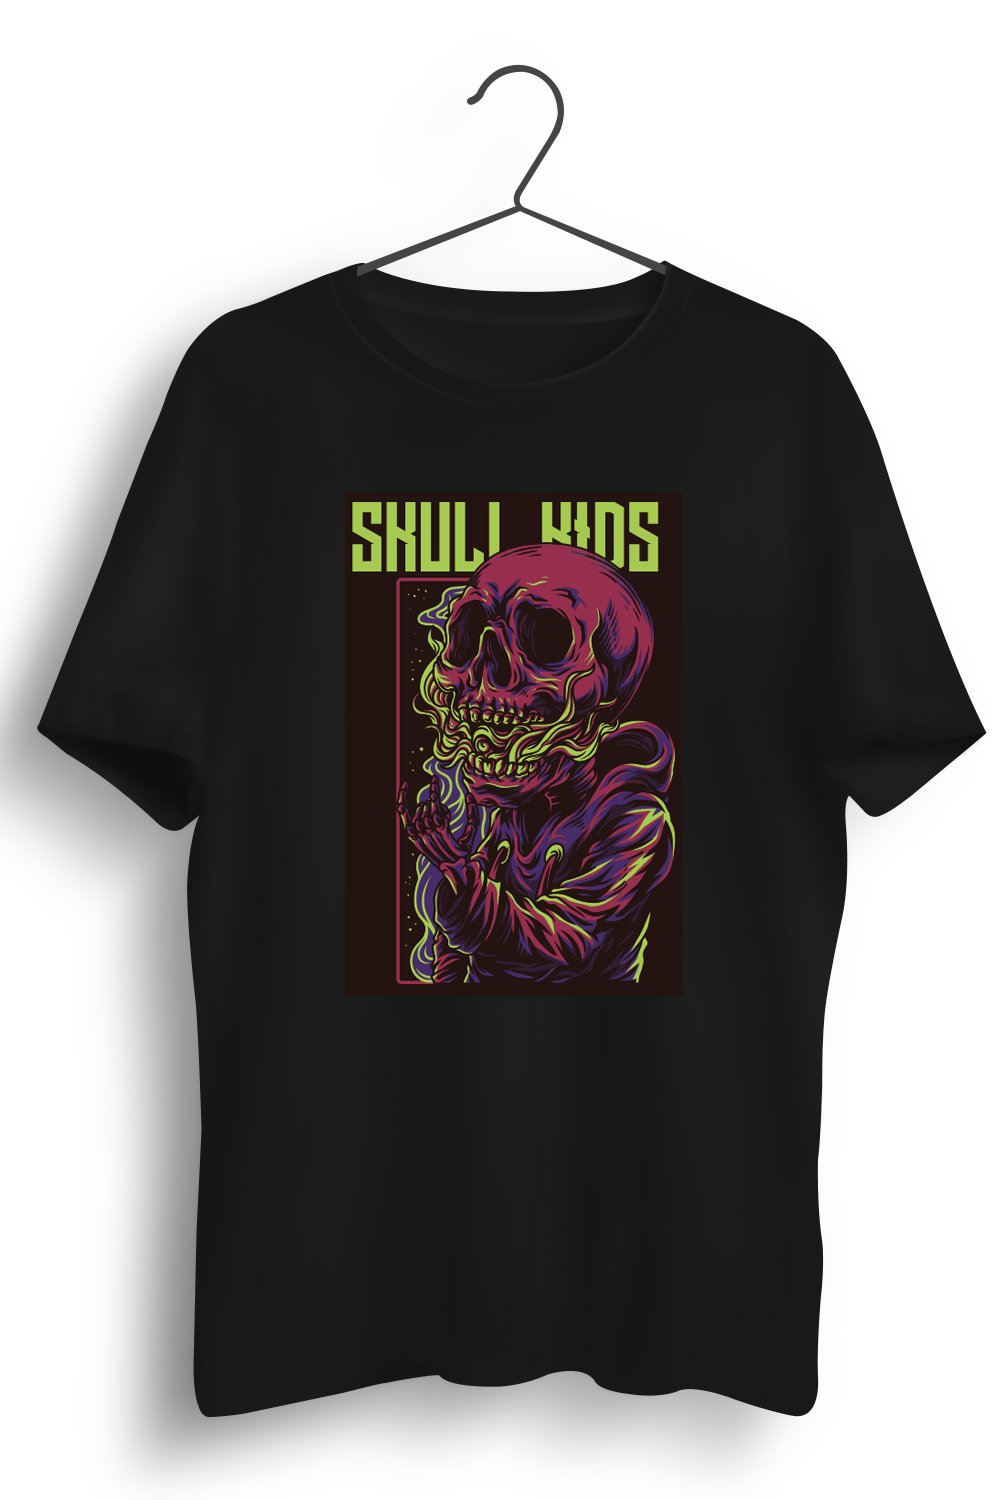 Skull Kids Graphic Printed Black Tshirt